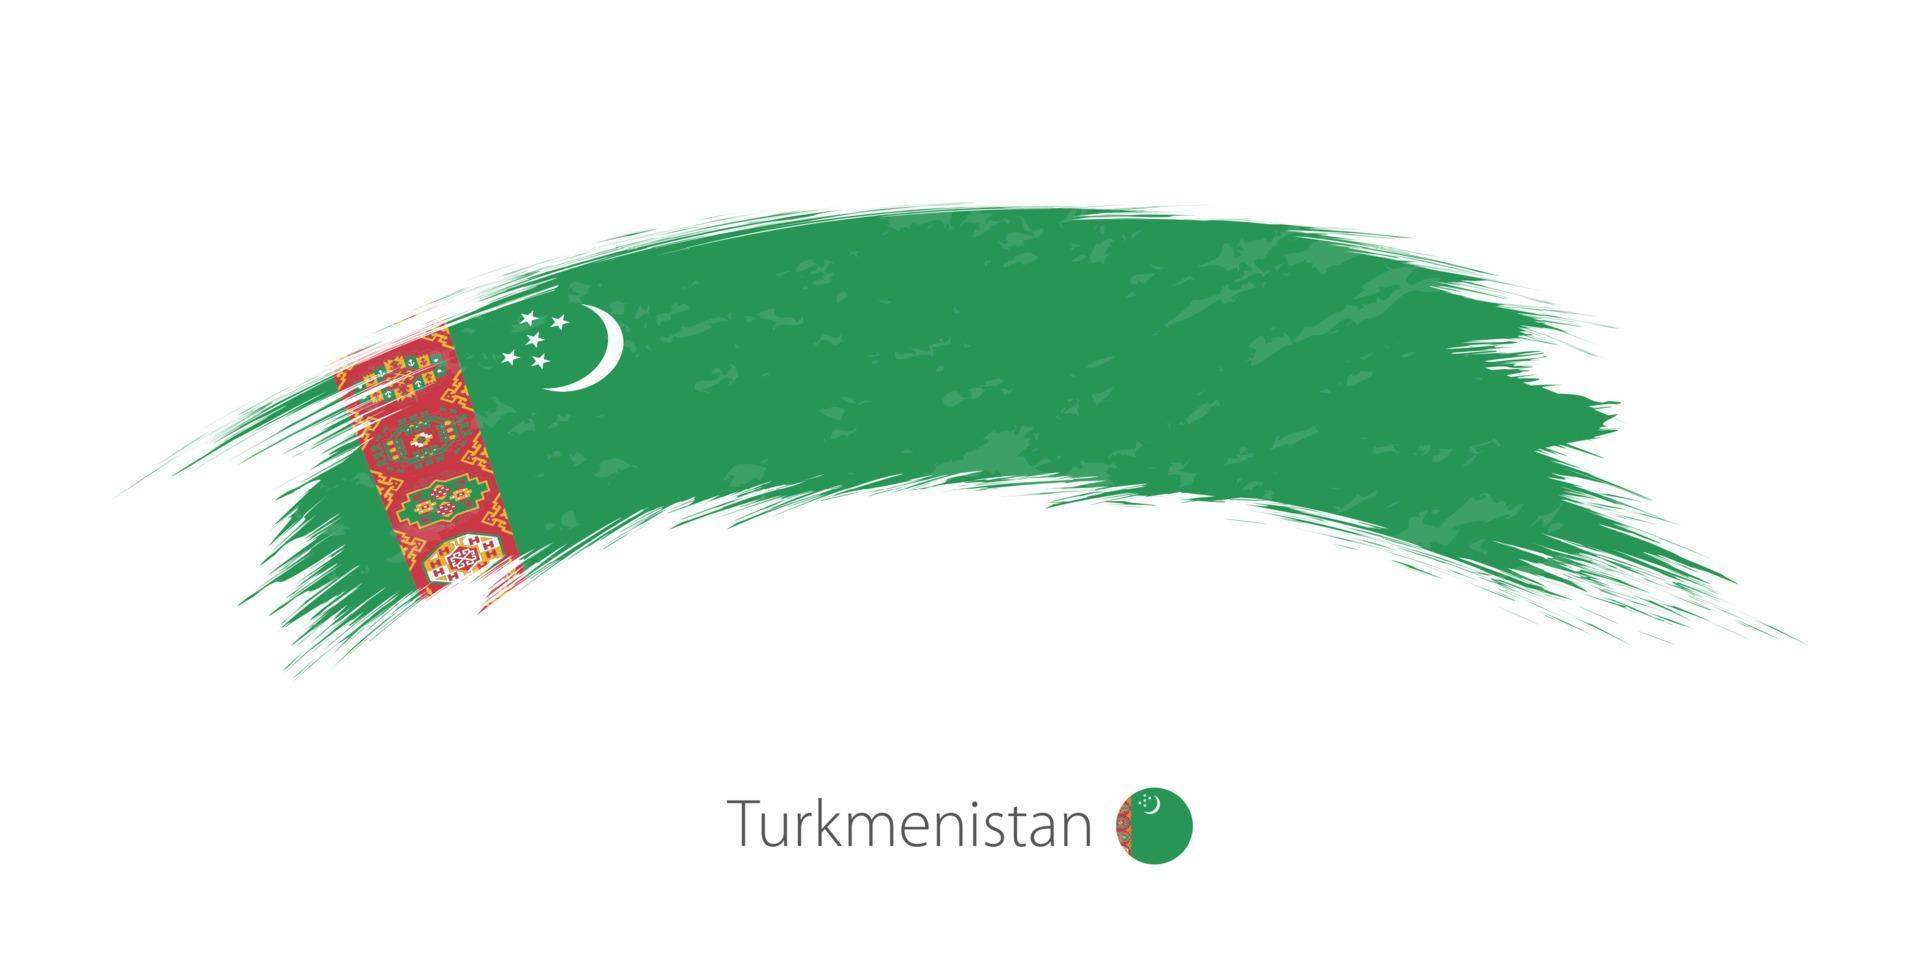 drapeau du turkménistan en coup de pinceau grunge arrondi. vecteur